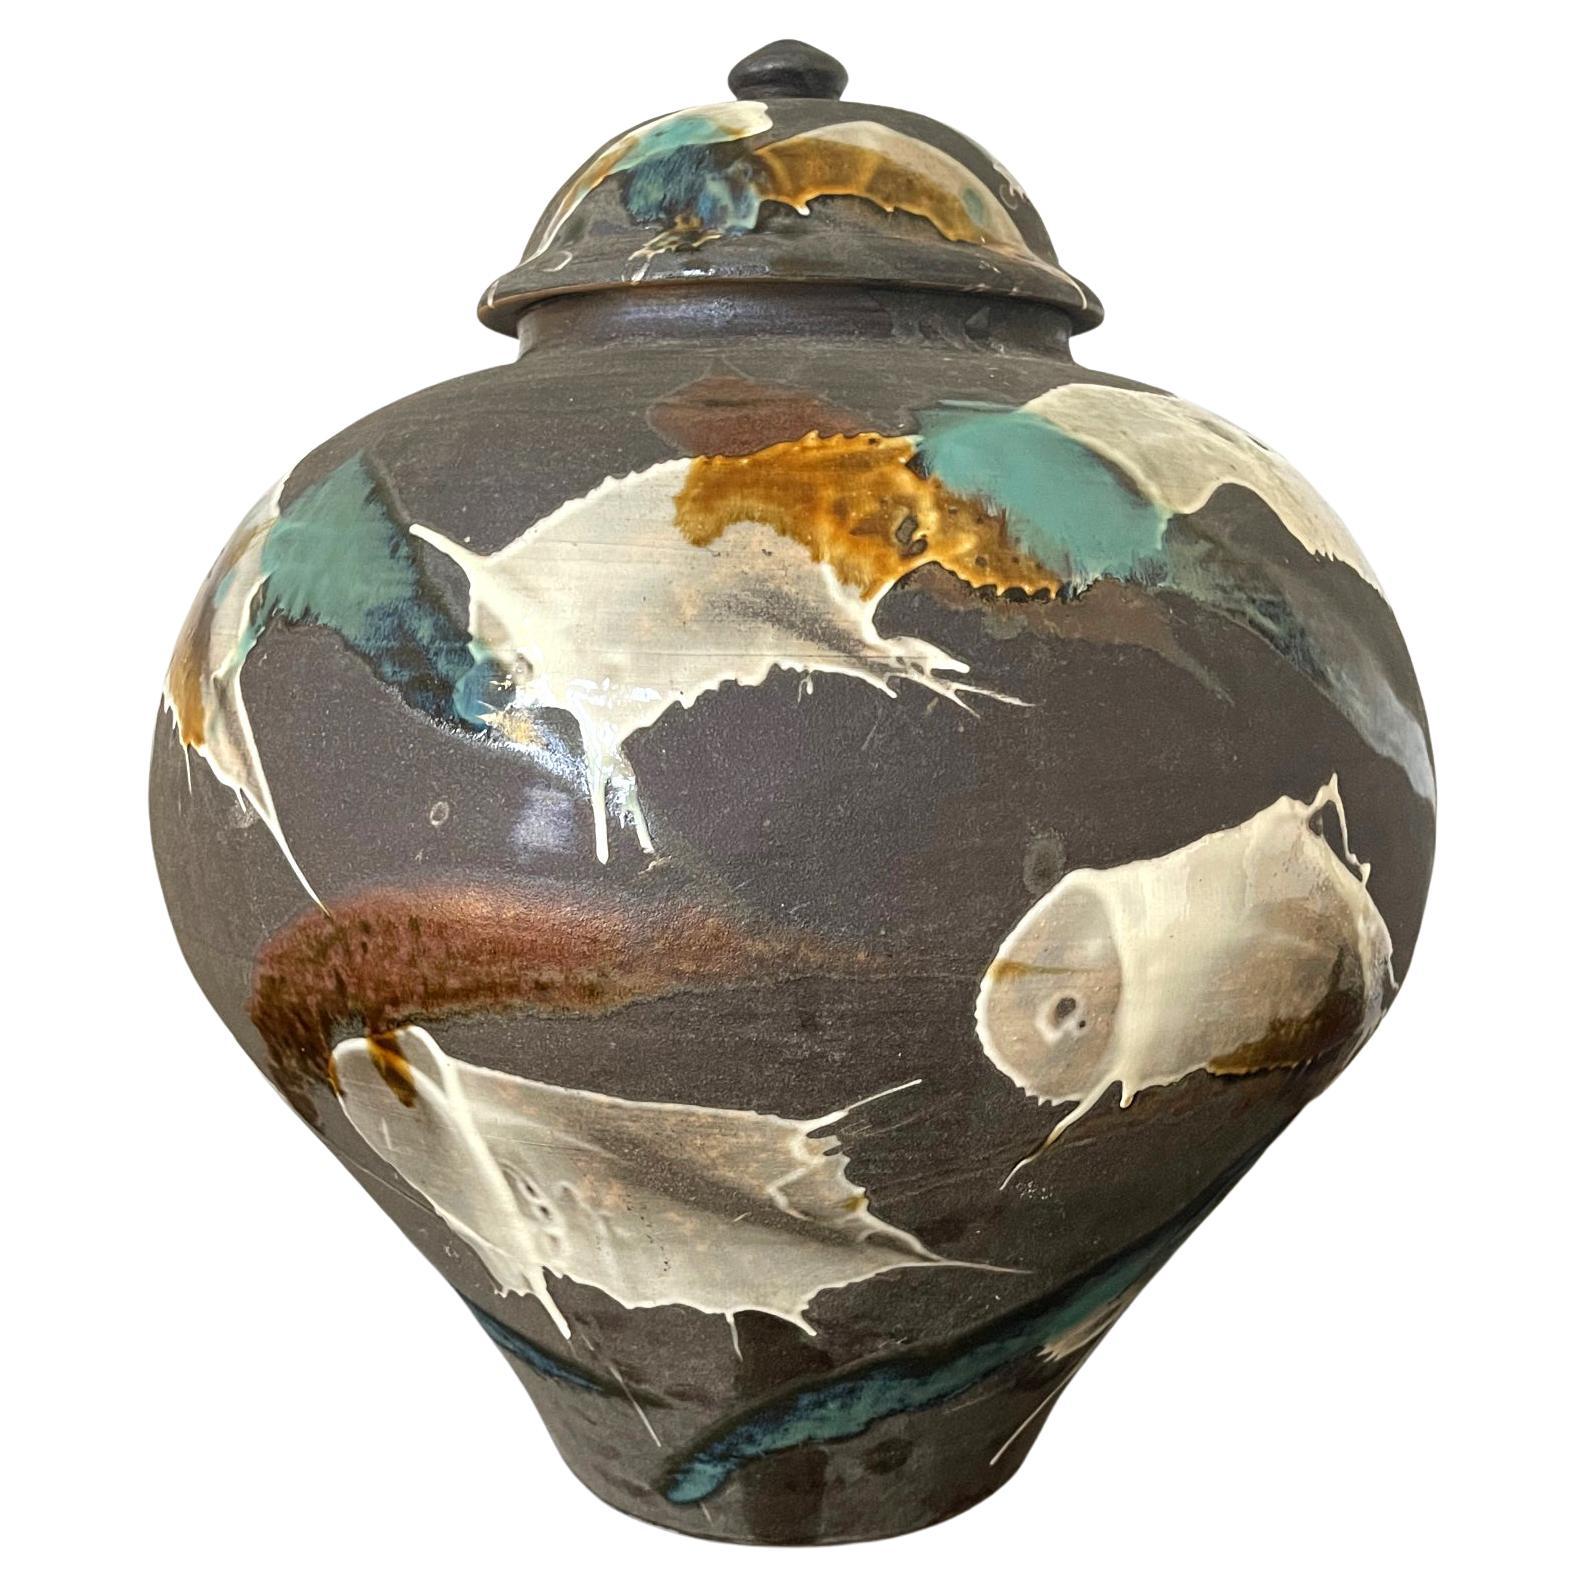 Groes zeitgenssisches japanisches Keramikgef aus Onda Yaki Kiln